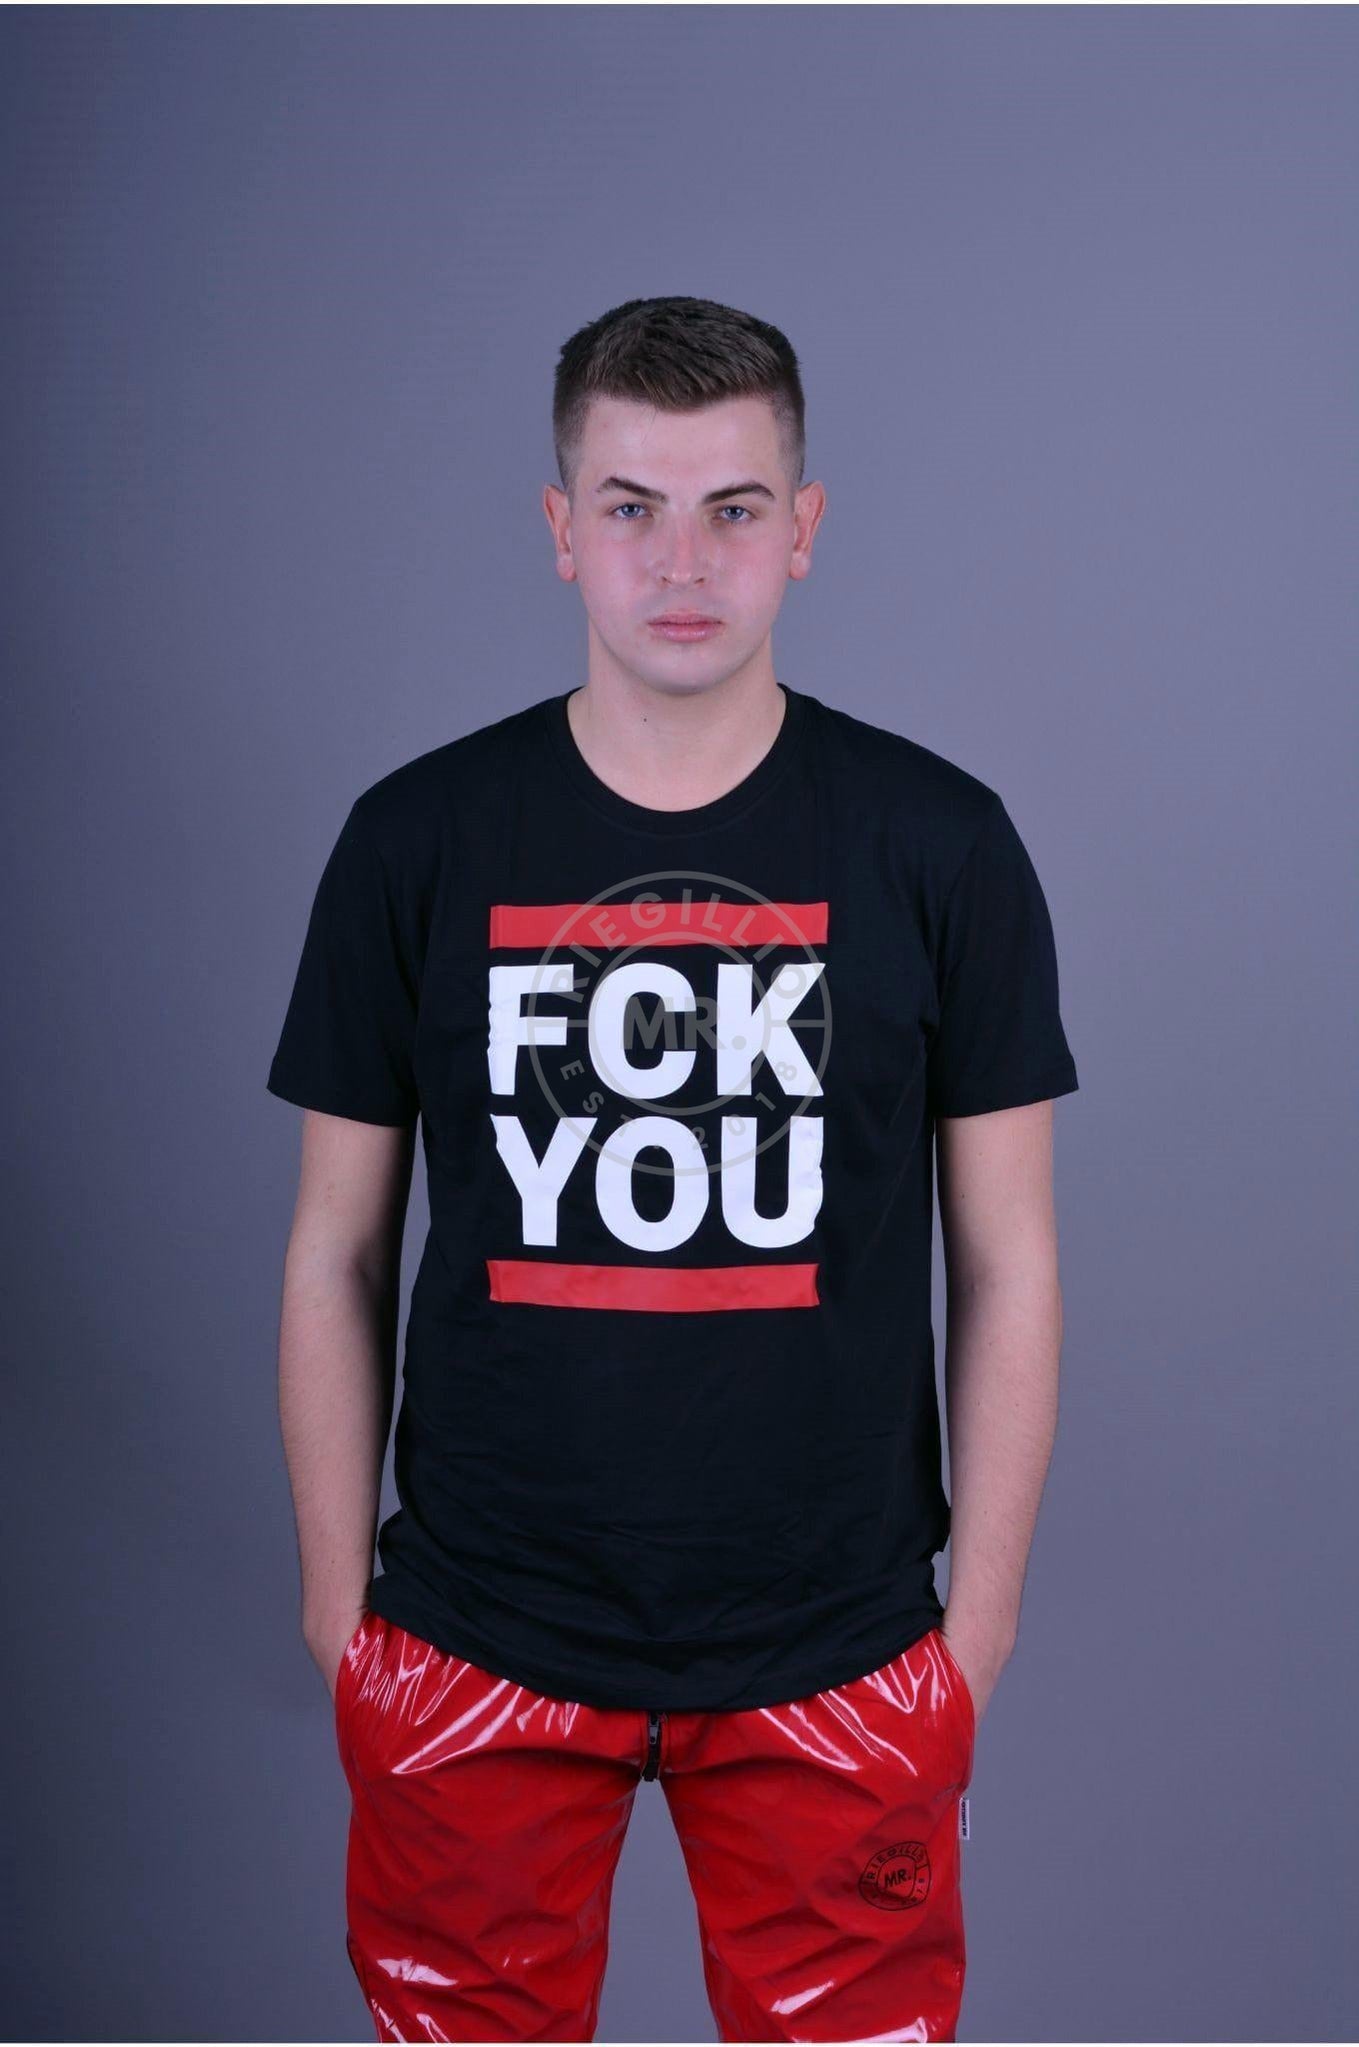 Sk8erboy FCK YOU T-Shirt-at MR. Riegillio